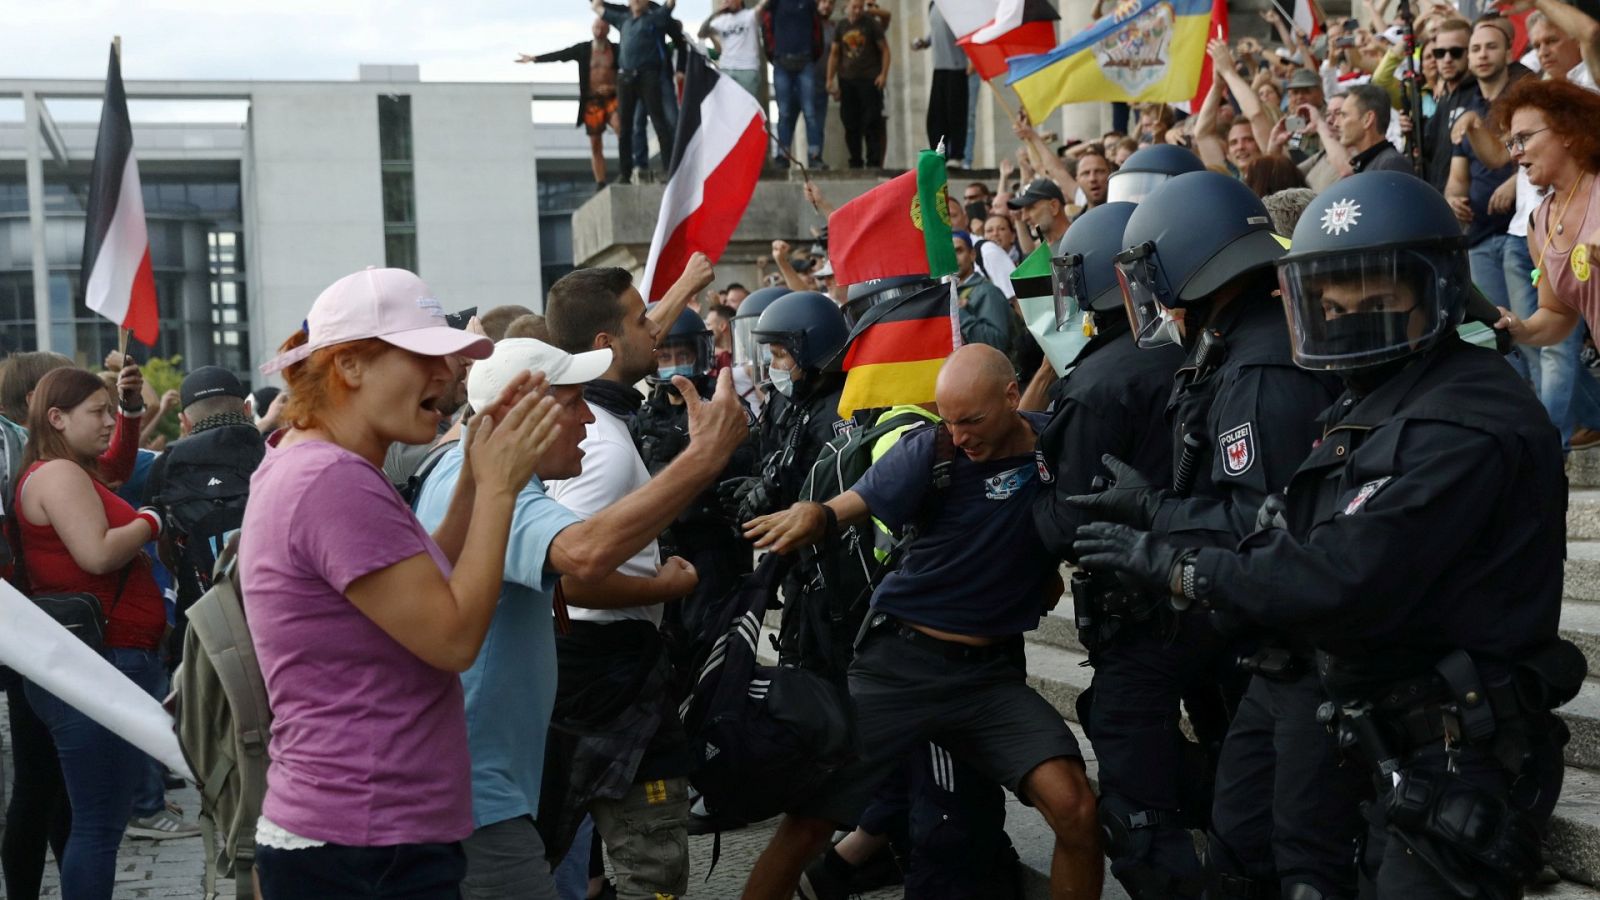 Alemania - El gobierno alemán condena el intento de asalto del Reichstag tras la manifestación negacionista - RTVE.es